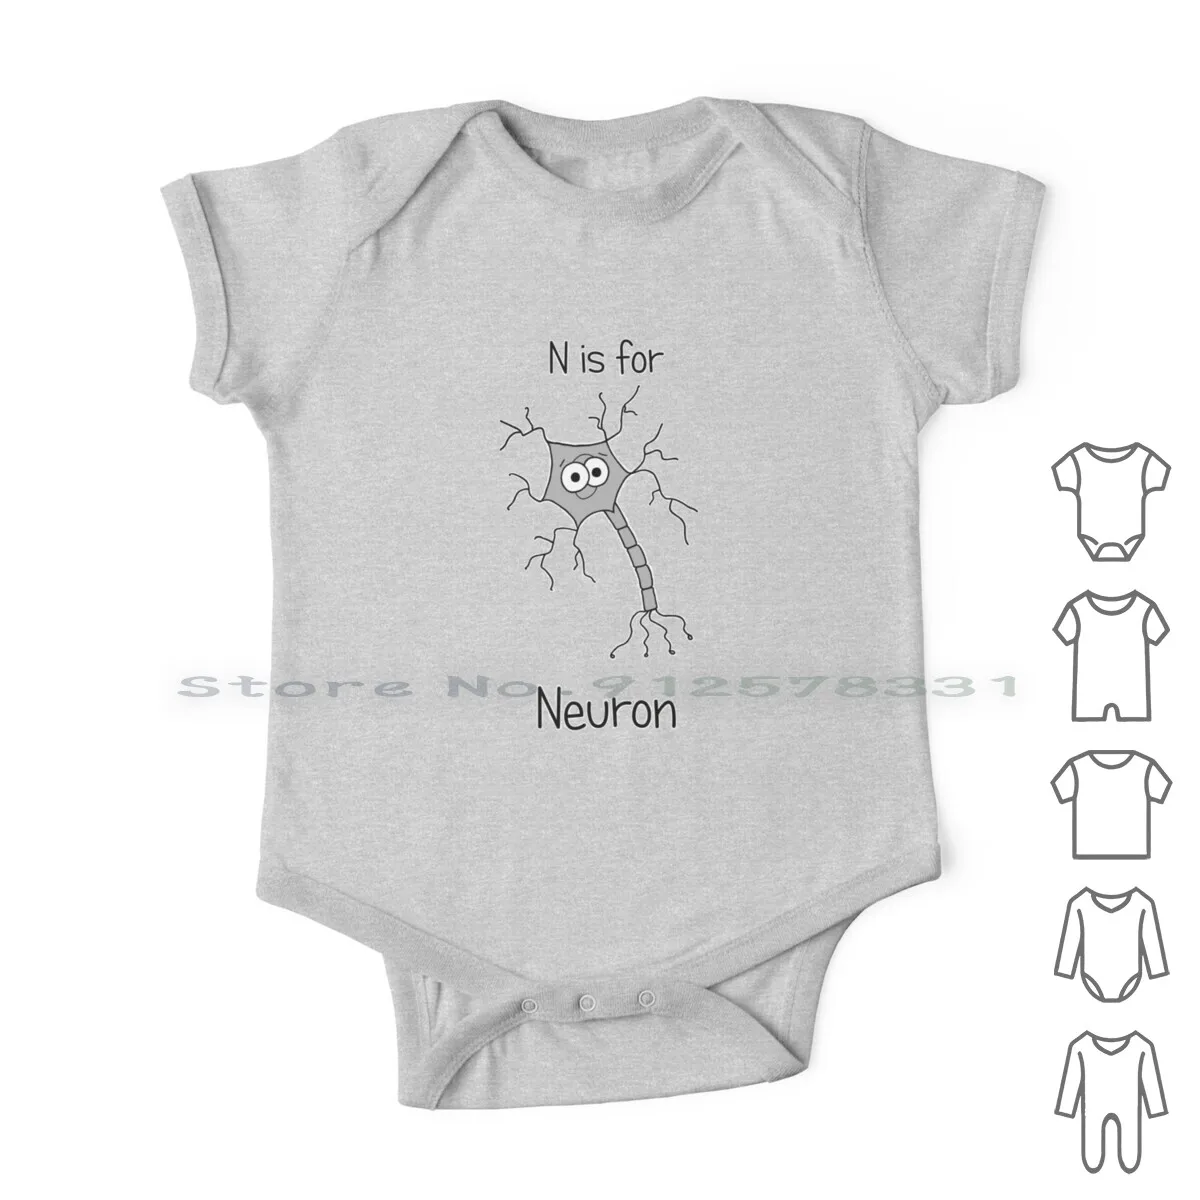 

Одежда для новорожденных N Is для нейрона, комбинезоны, хлопковые комбинезоны, милые гики, нерди, биология, нейрология, медицина, анатомия, клетки головного мозга